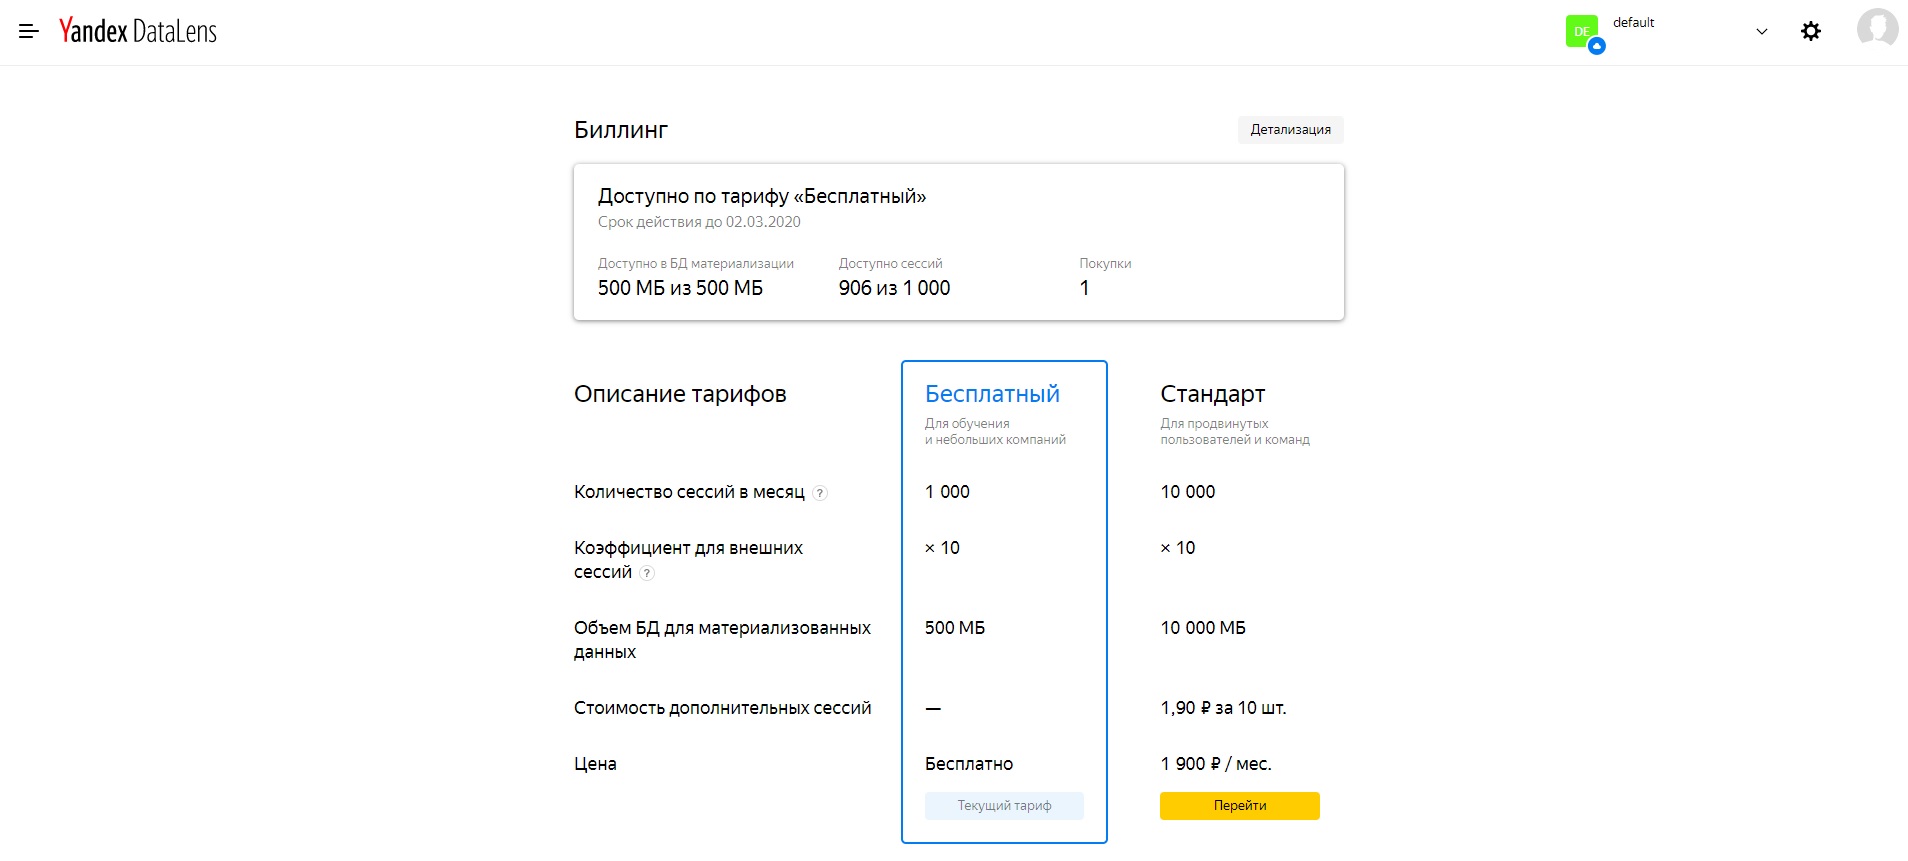 Сейчас в Yandex DataLens действуют два тарифа: Бесплатный и Стандарт